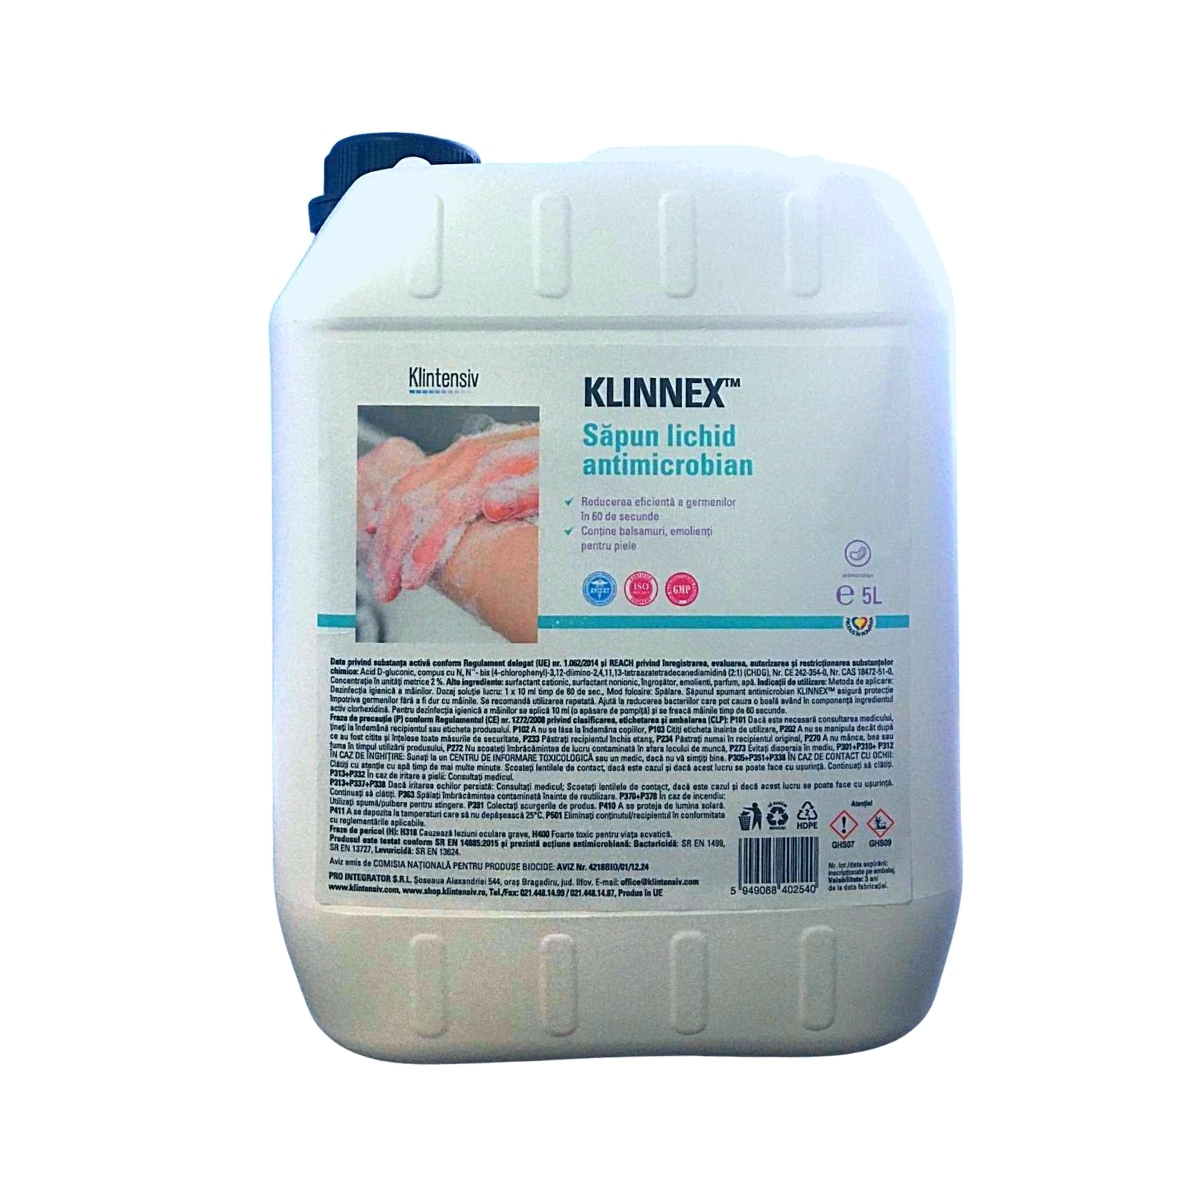 Klintensiv Klinnex Biocid Sapun lichid antimicrobian 5 L, avizat Ministerul Sanatatii